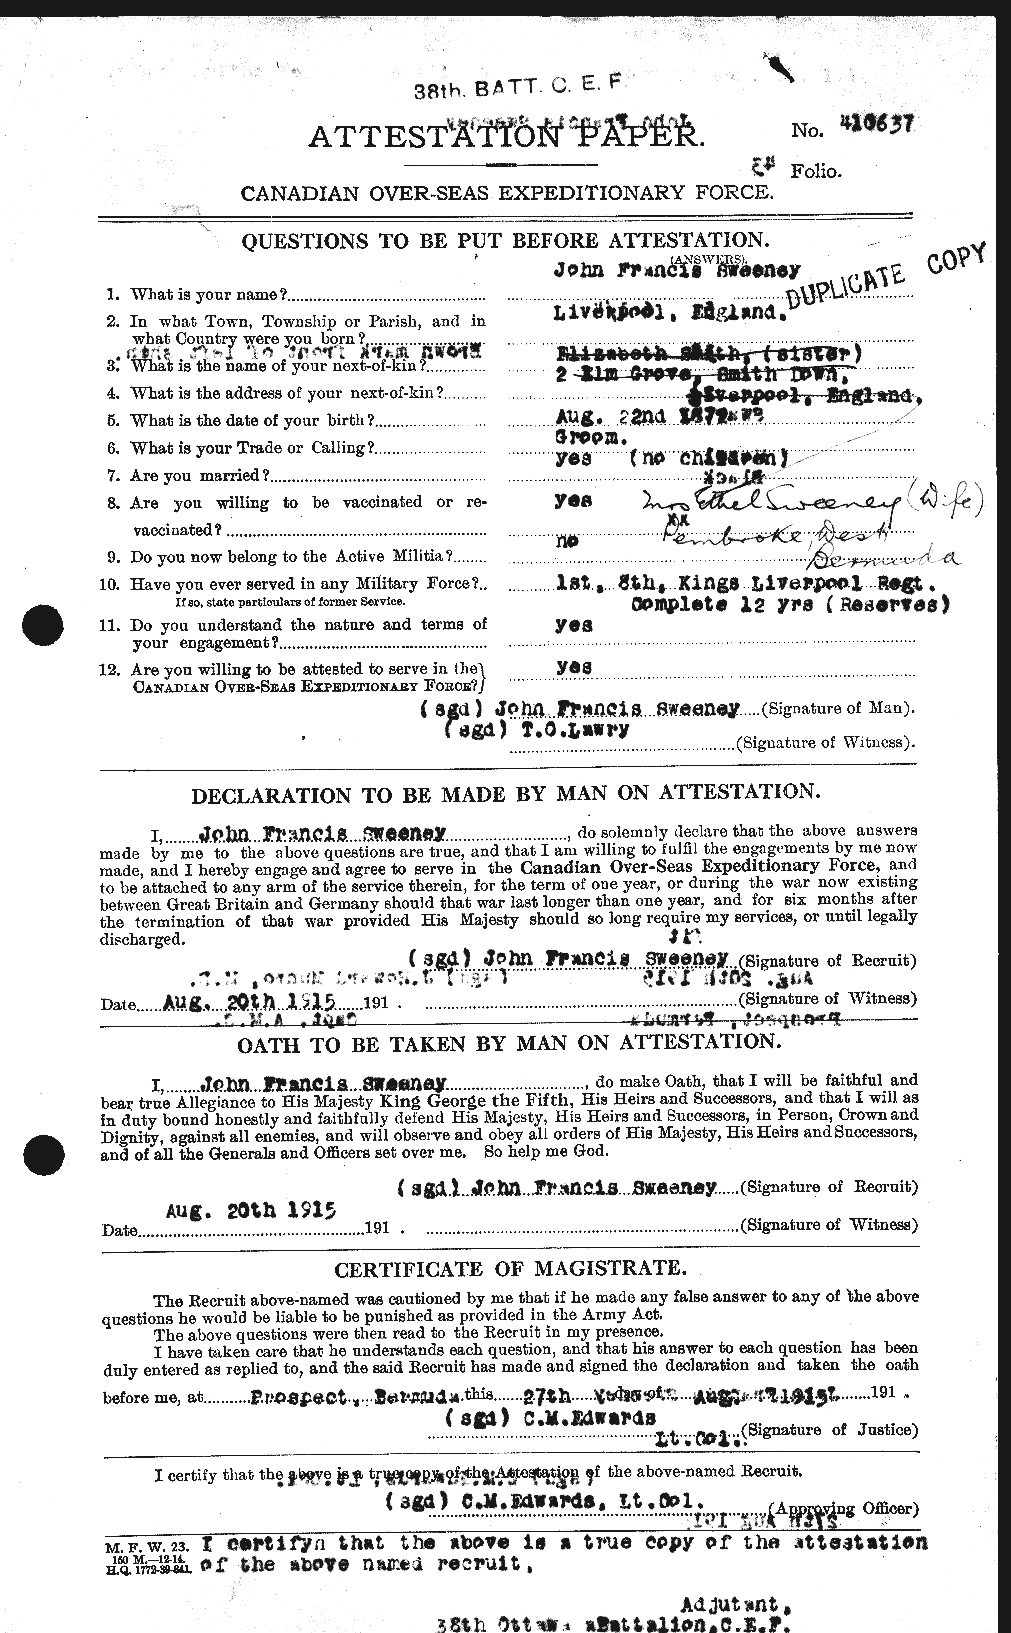 Dossiers du Personnel de la Première Guerre mondiale - CEC 129731a